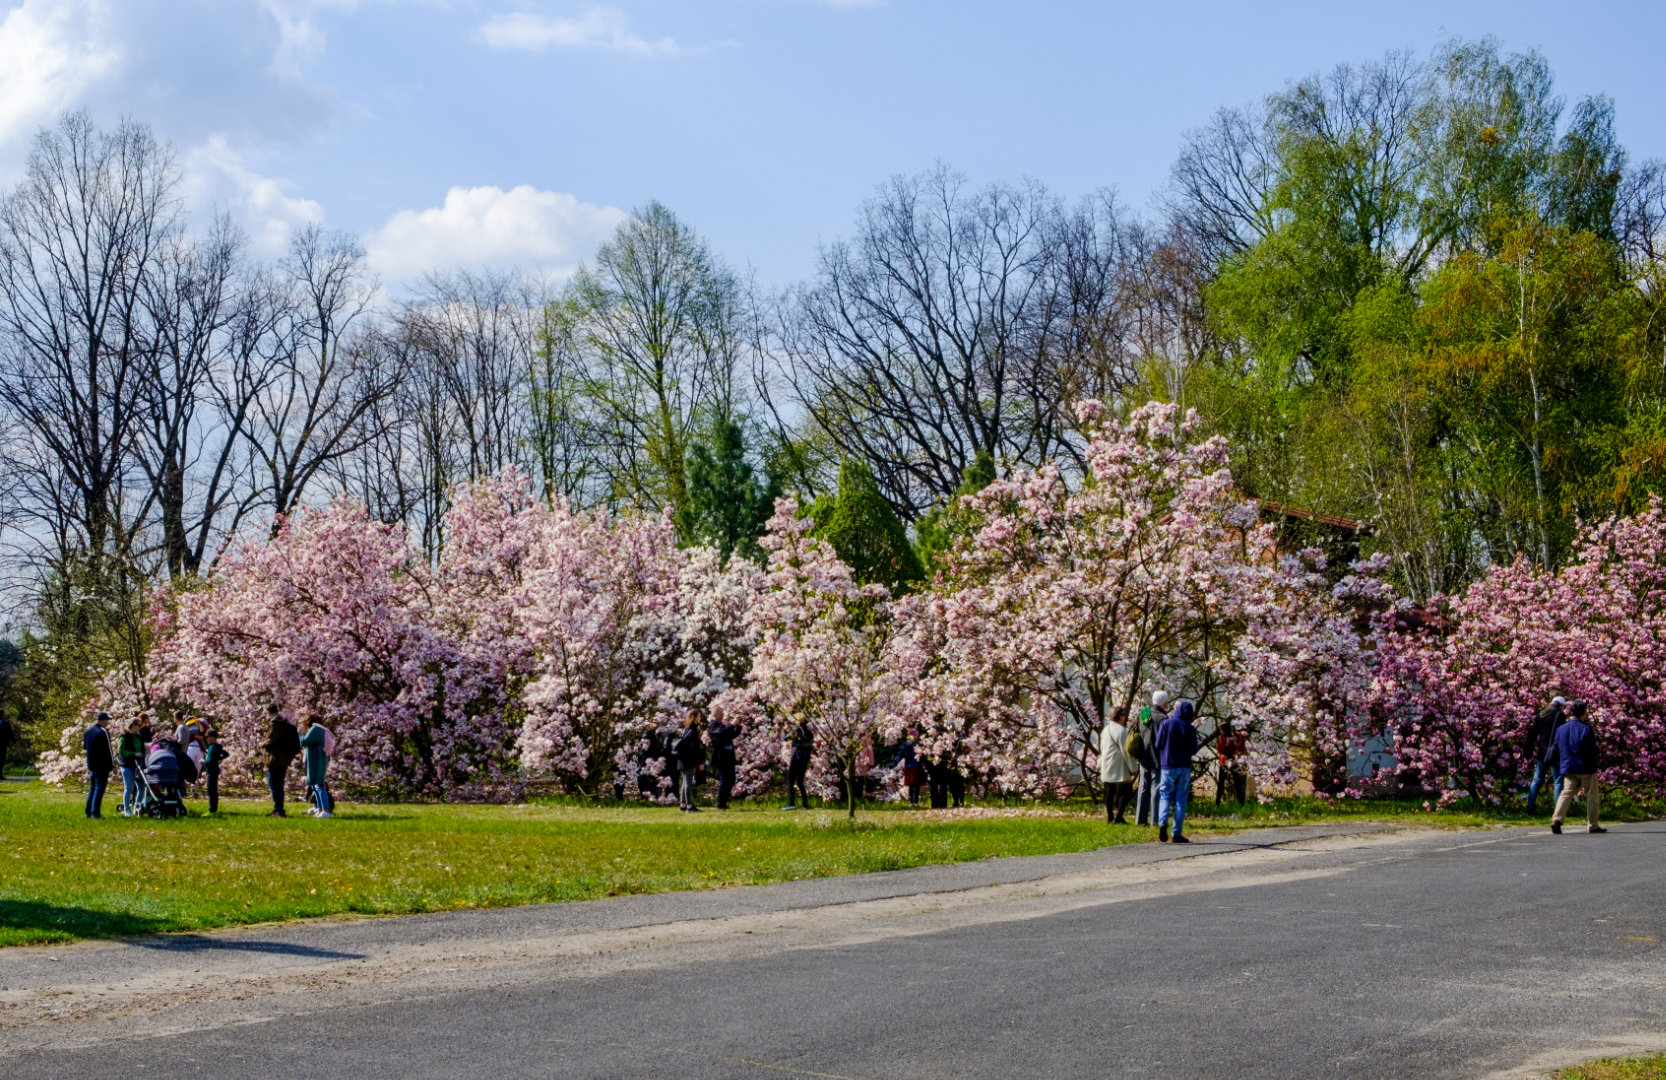 Spacerujący i fotografujący ludzie na tle kwitnących magnolii w maju